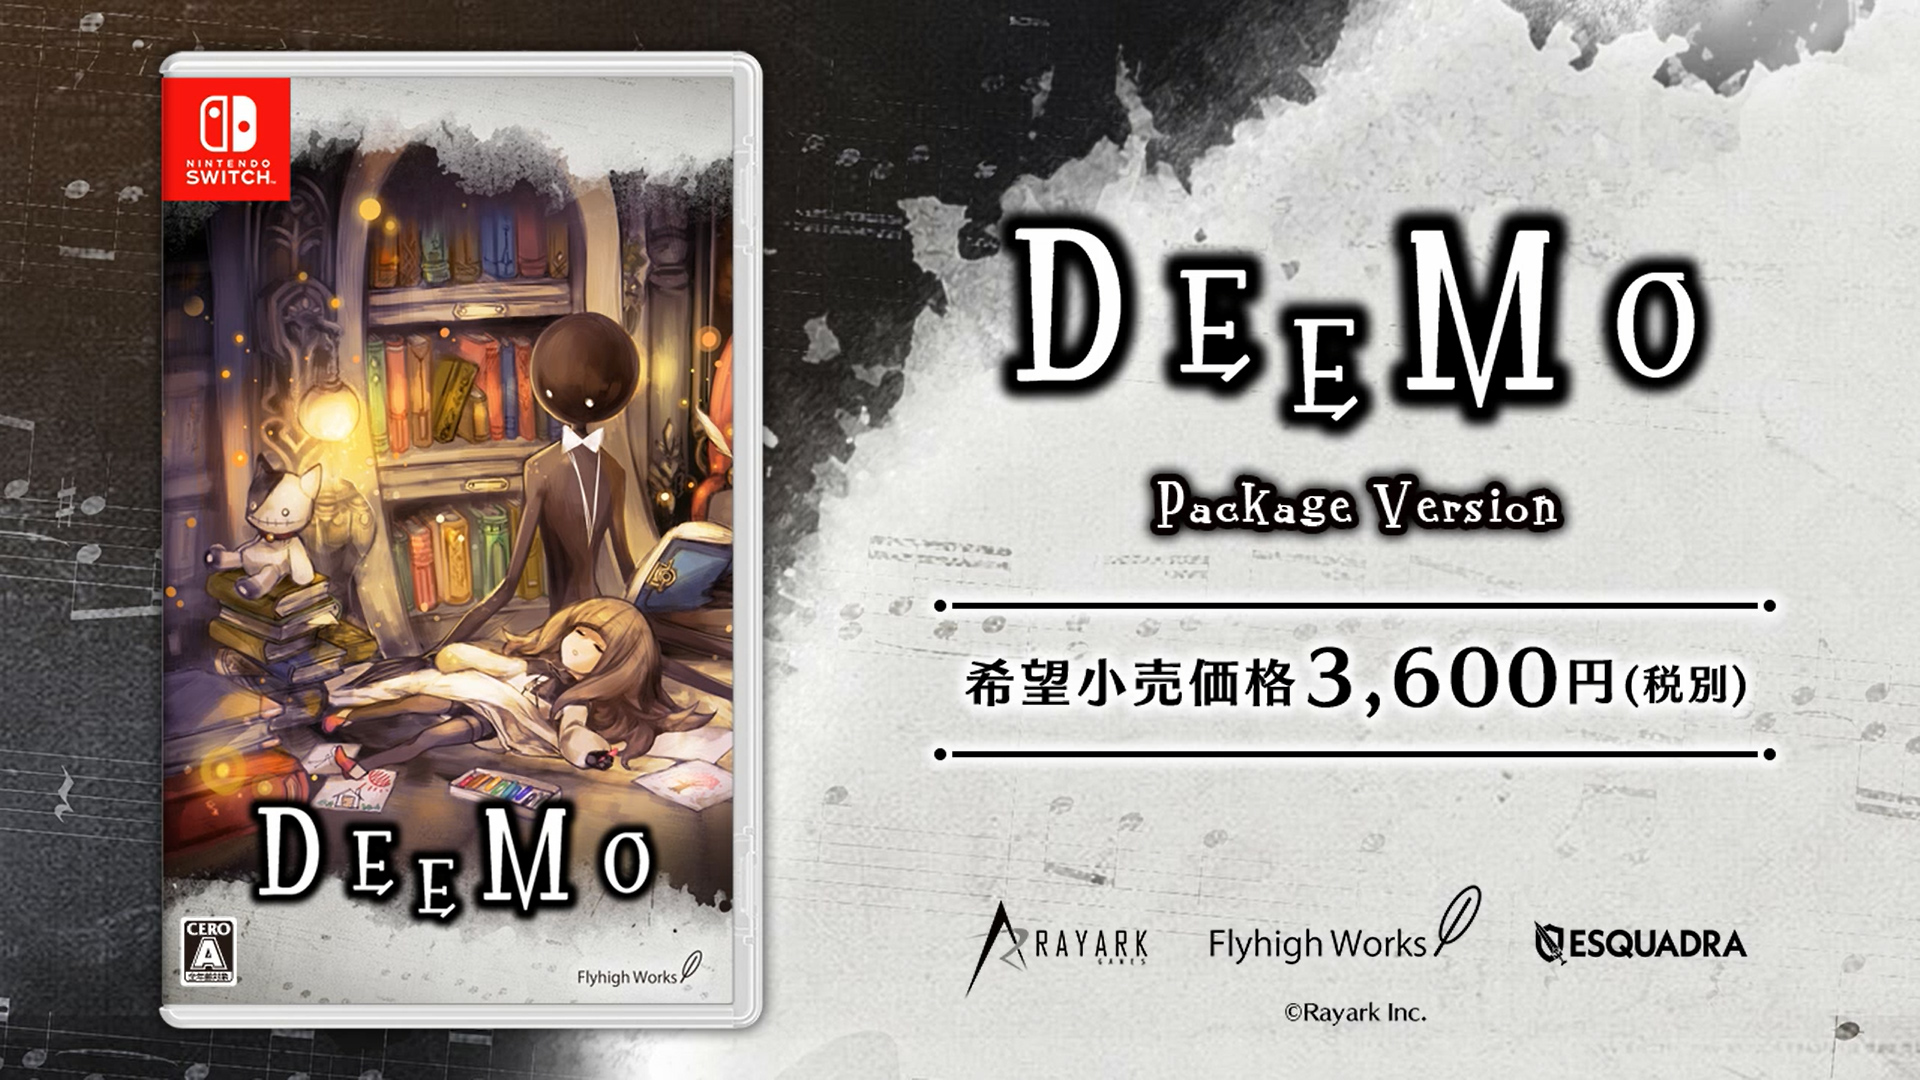 ベストコレクション Deemo 壁紙公式 海壁紙